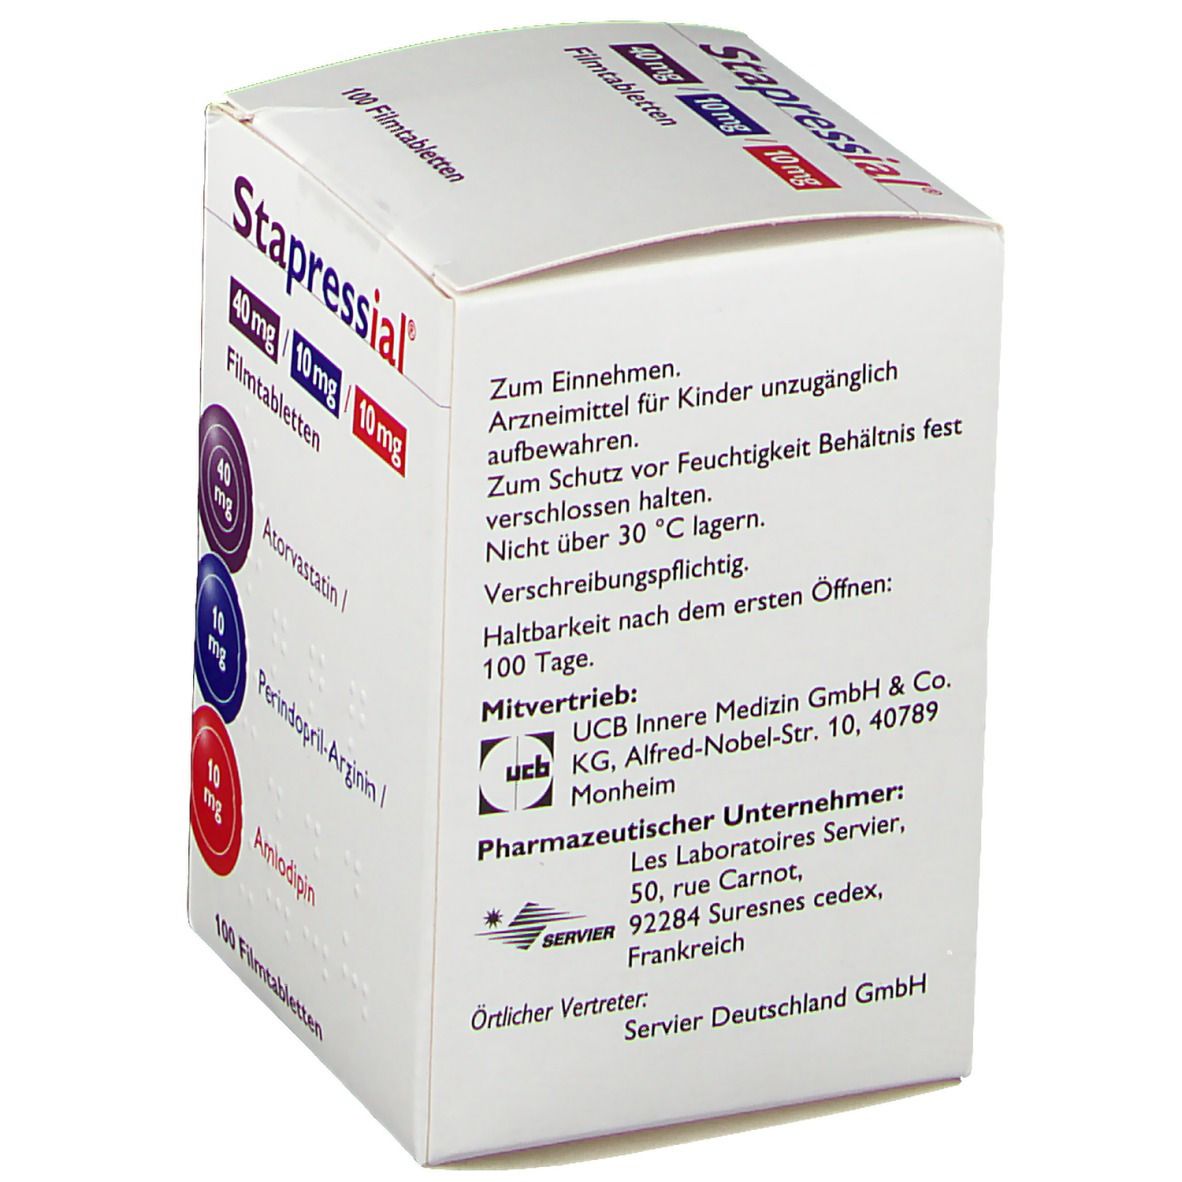 Stapressial® 40 mg/10 mg/10 mg